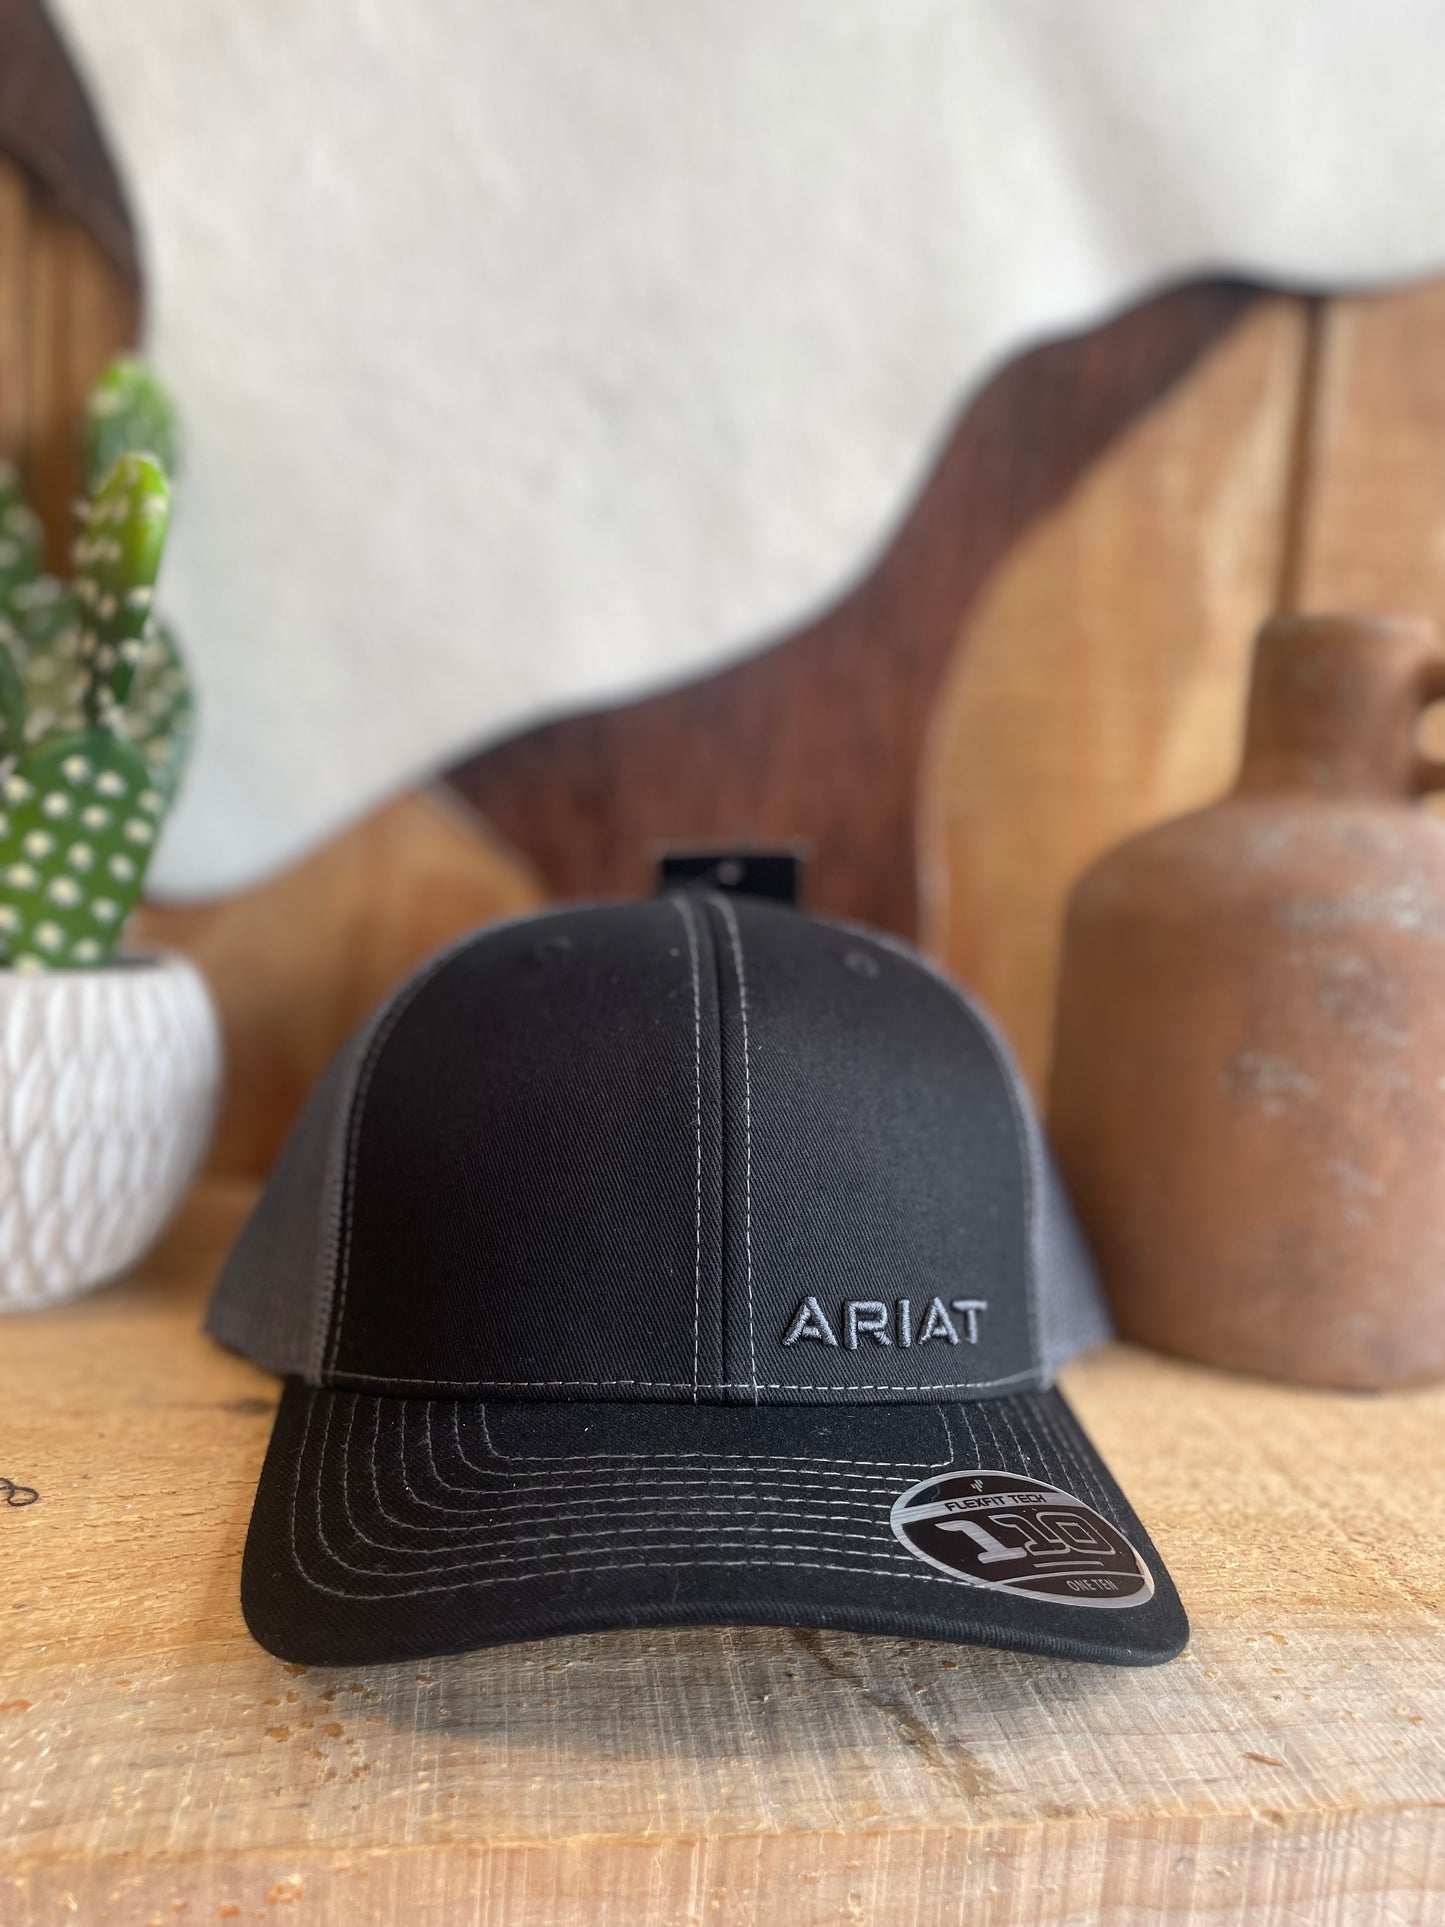 ARIAT MEN'S TEXT OFFSET BLACK MESH BALL CAP